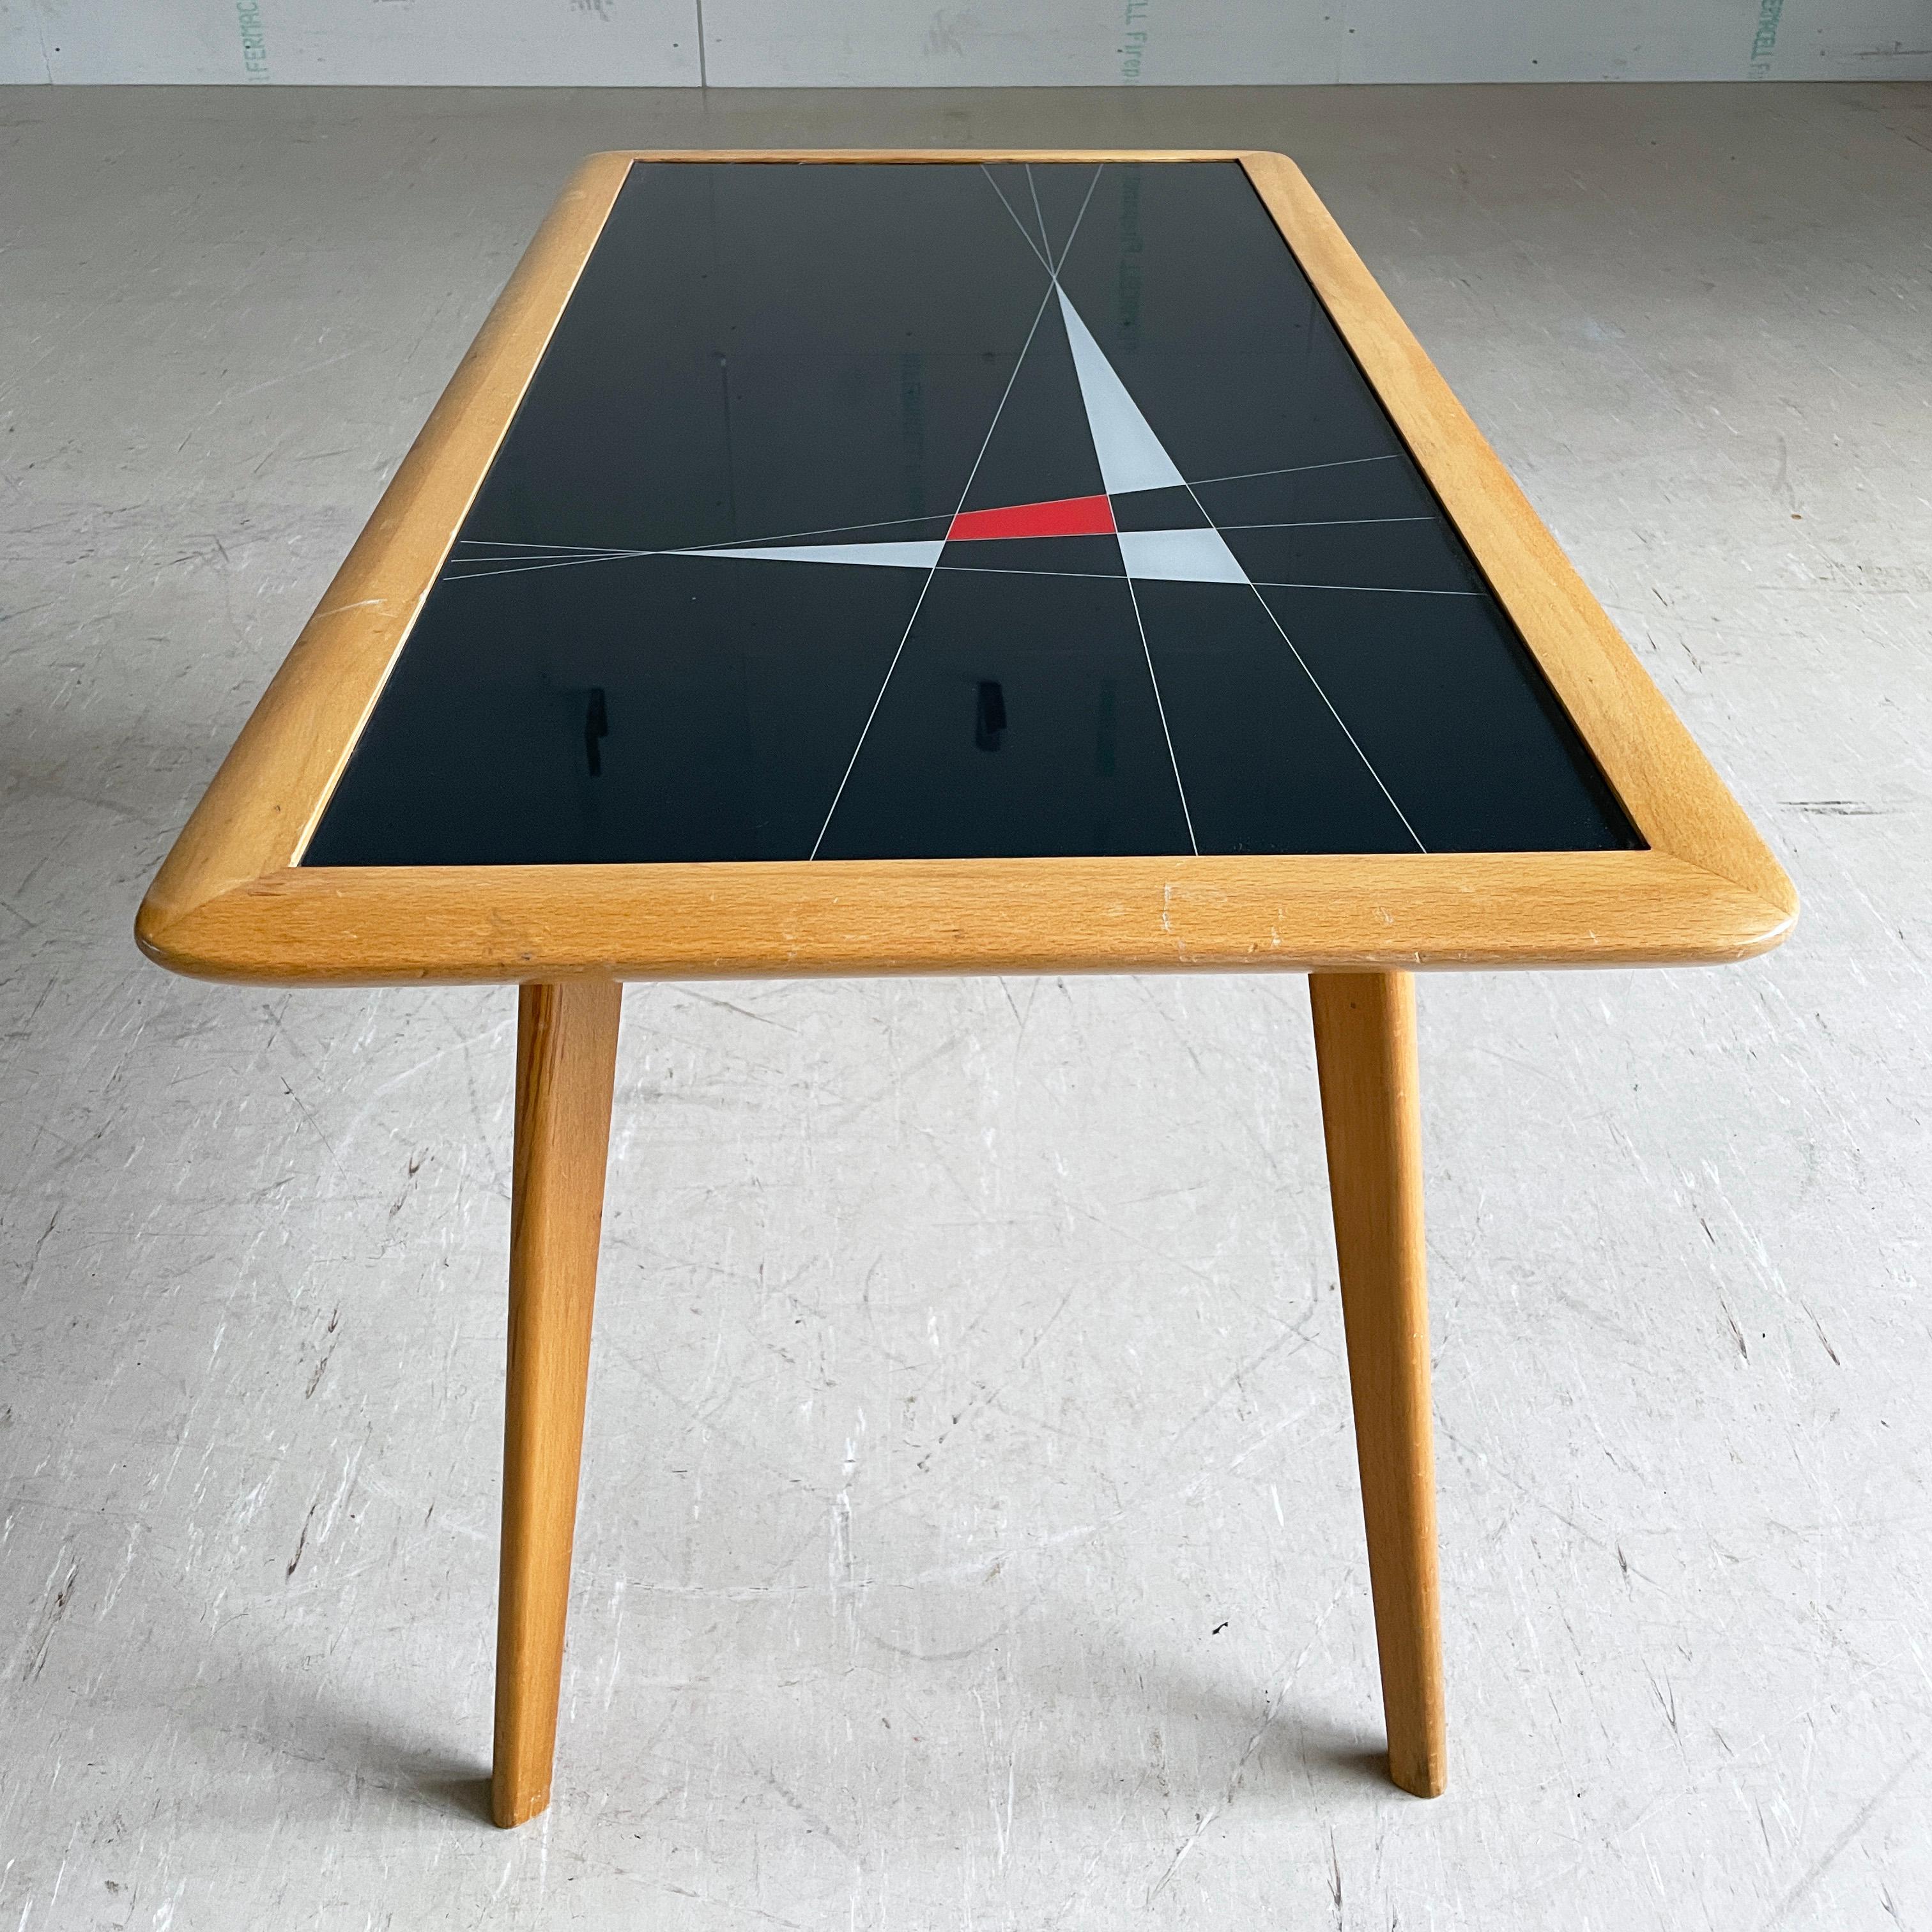 Table basse du milieu du siècle avec un plateau en verre incrusté avec un design atomique stylisé et un entourage et des pieds en bois. Produit par FUBO, Suisse, vers 1950 - 1960.
